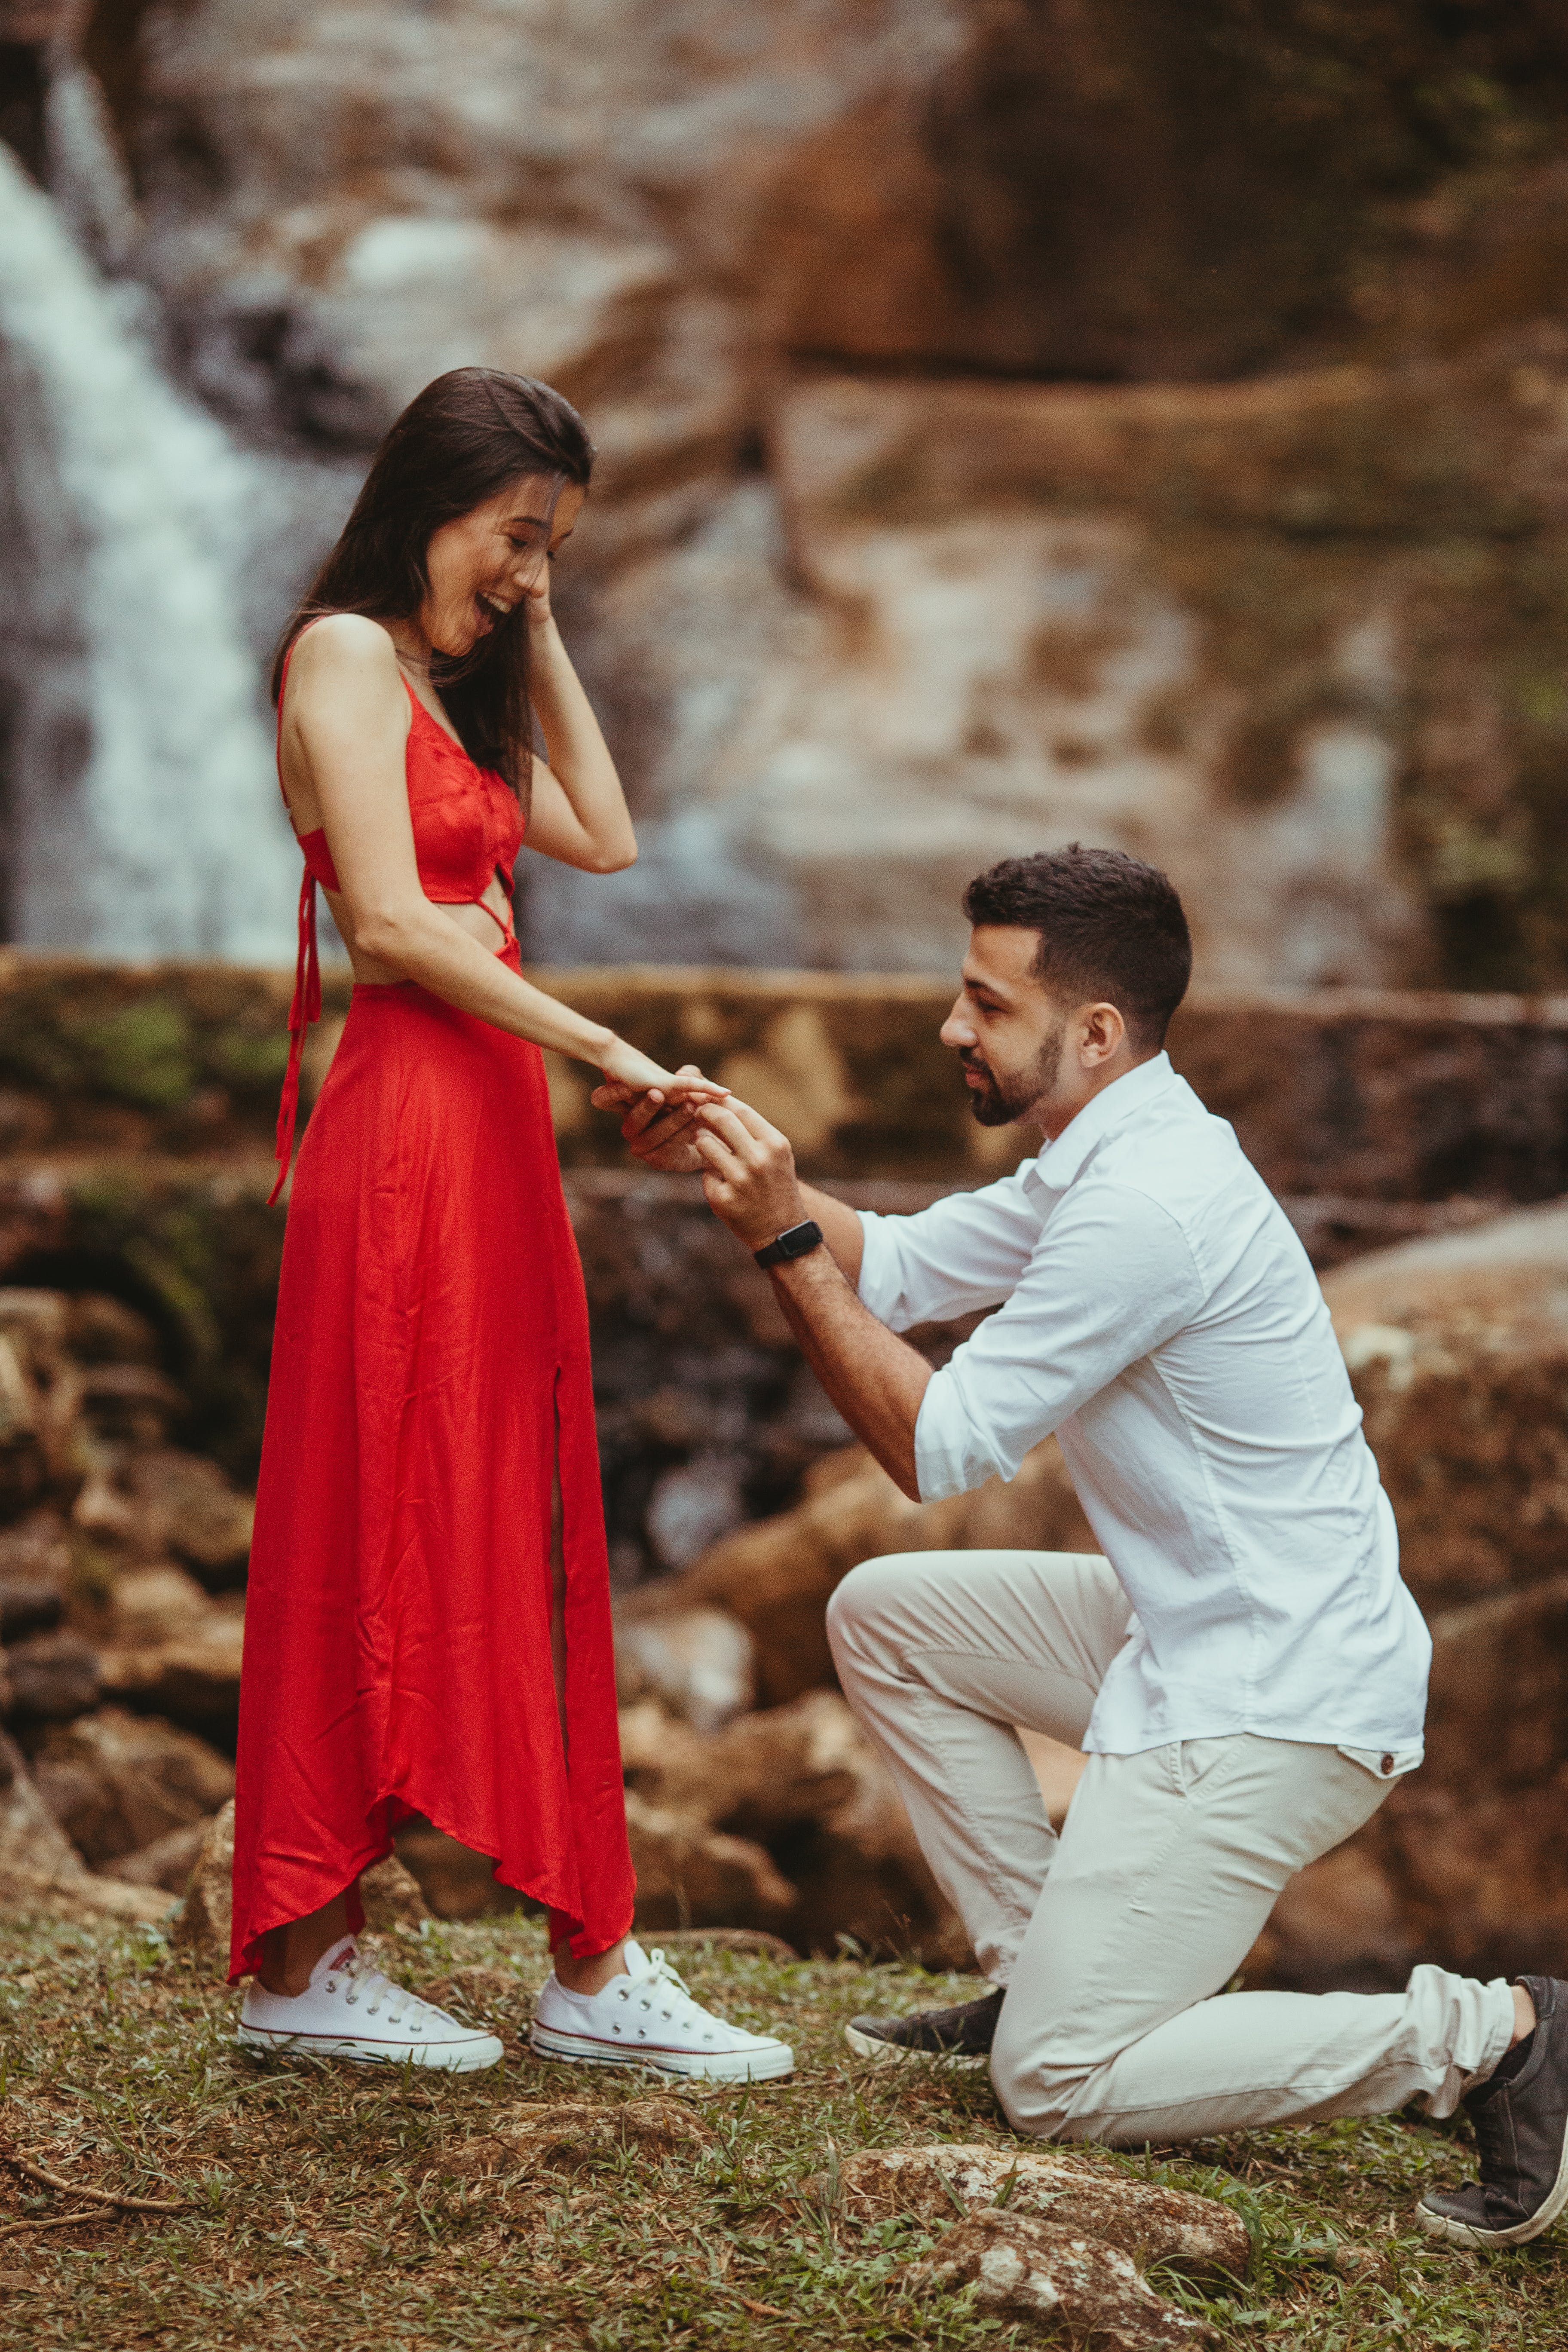 Ein Mann kniet auf einem Knie, während er seiner Partnerin im Freien einen Heiratsantrag macht | Quelle: Pexels